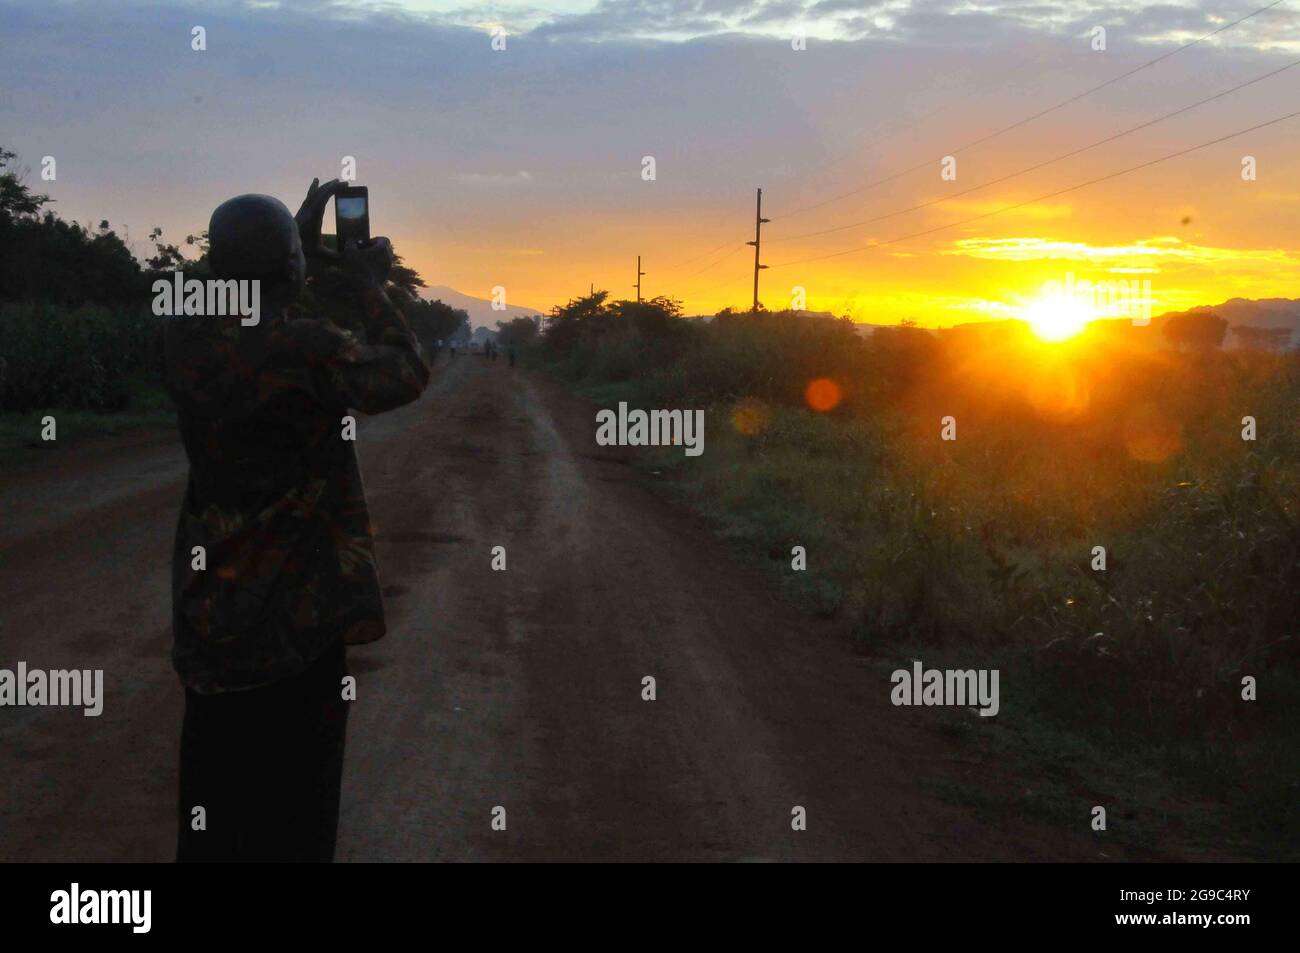 Le soleil se lève dans l'est de l'Ouganda à Mbale City. Le soleil se lève à 7h00 dans cette partie particulière du pays qui borde le Kenya. Ouganda. Banque D'Images